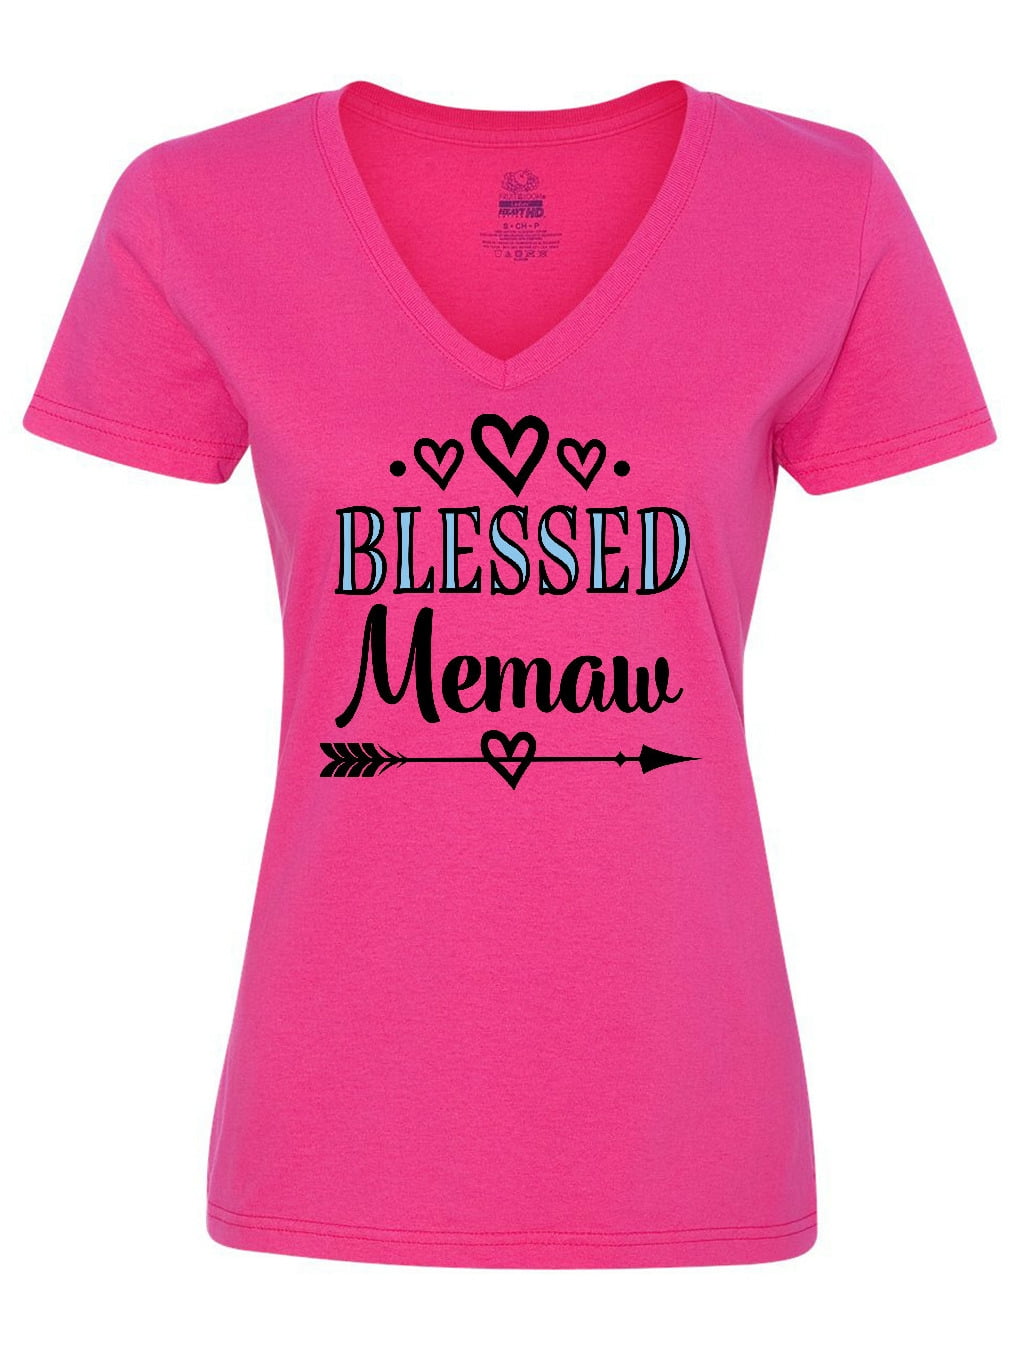 gift for grandma grandma gift grandma tshirt Mother's day shirt Memaw shirt grandma tee grandma shirt memaw gift mimi memaw tshirt